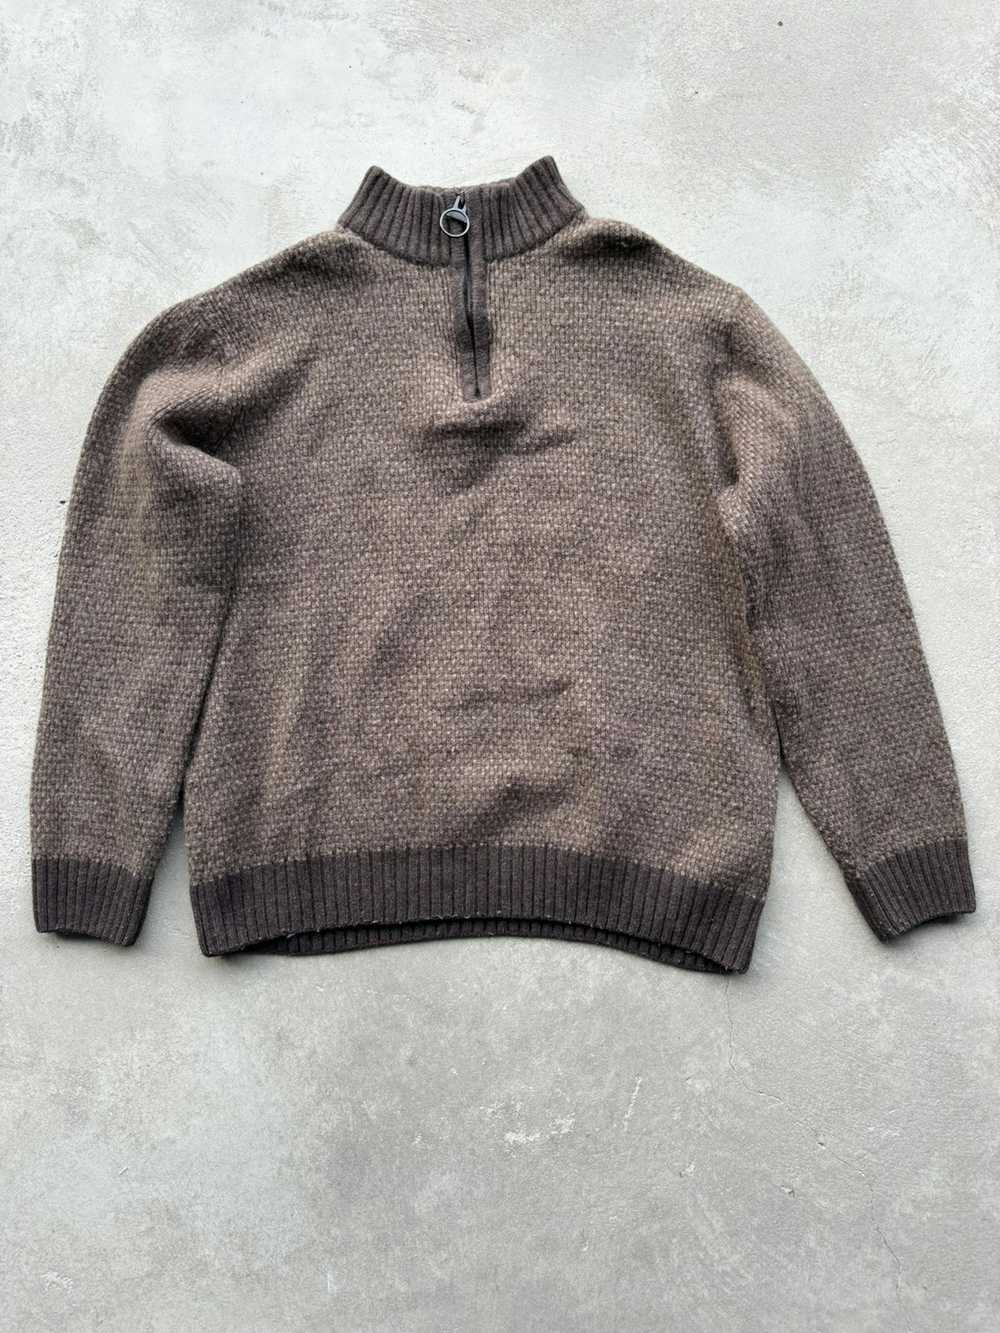 Barbour Barbour Wool 1/4 Zip Sweater - image 1